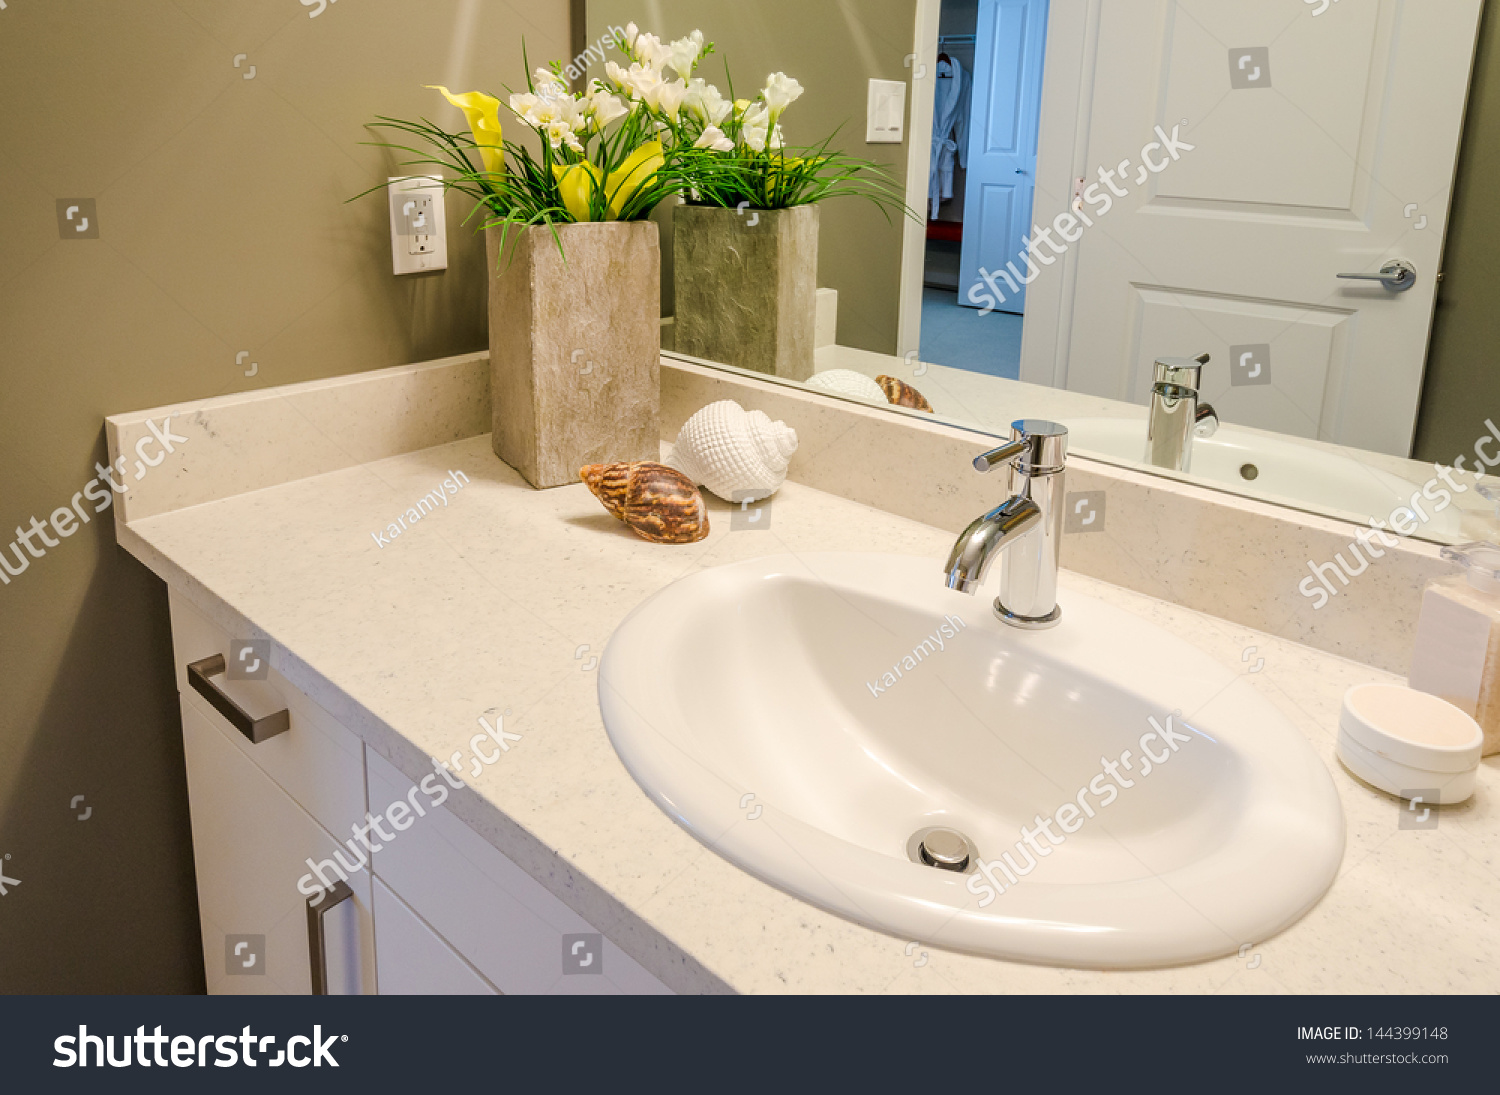 Раковина на столешнице в ванной комнате